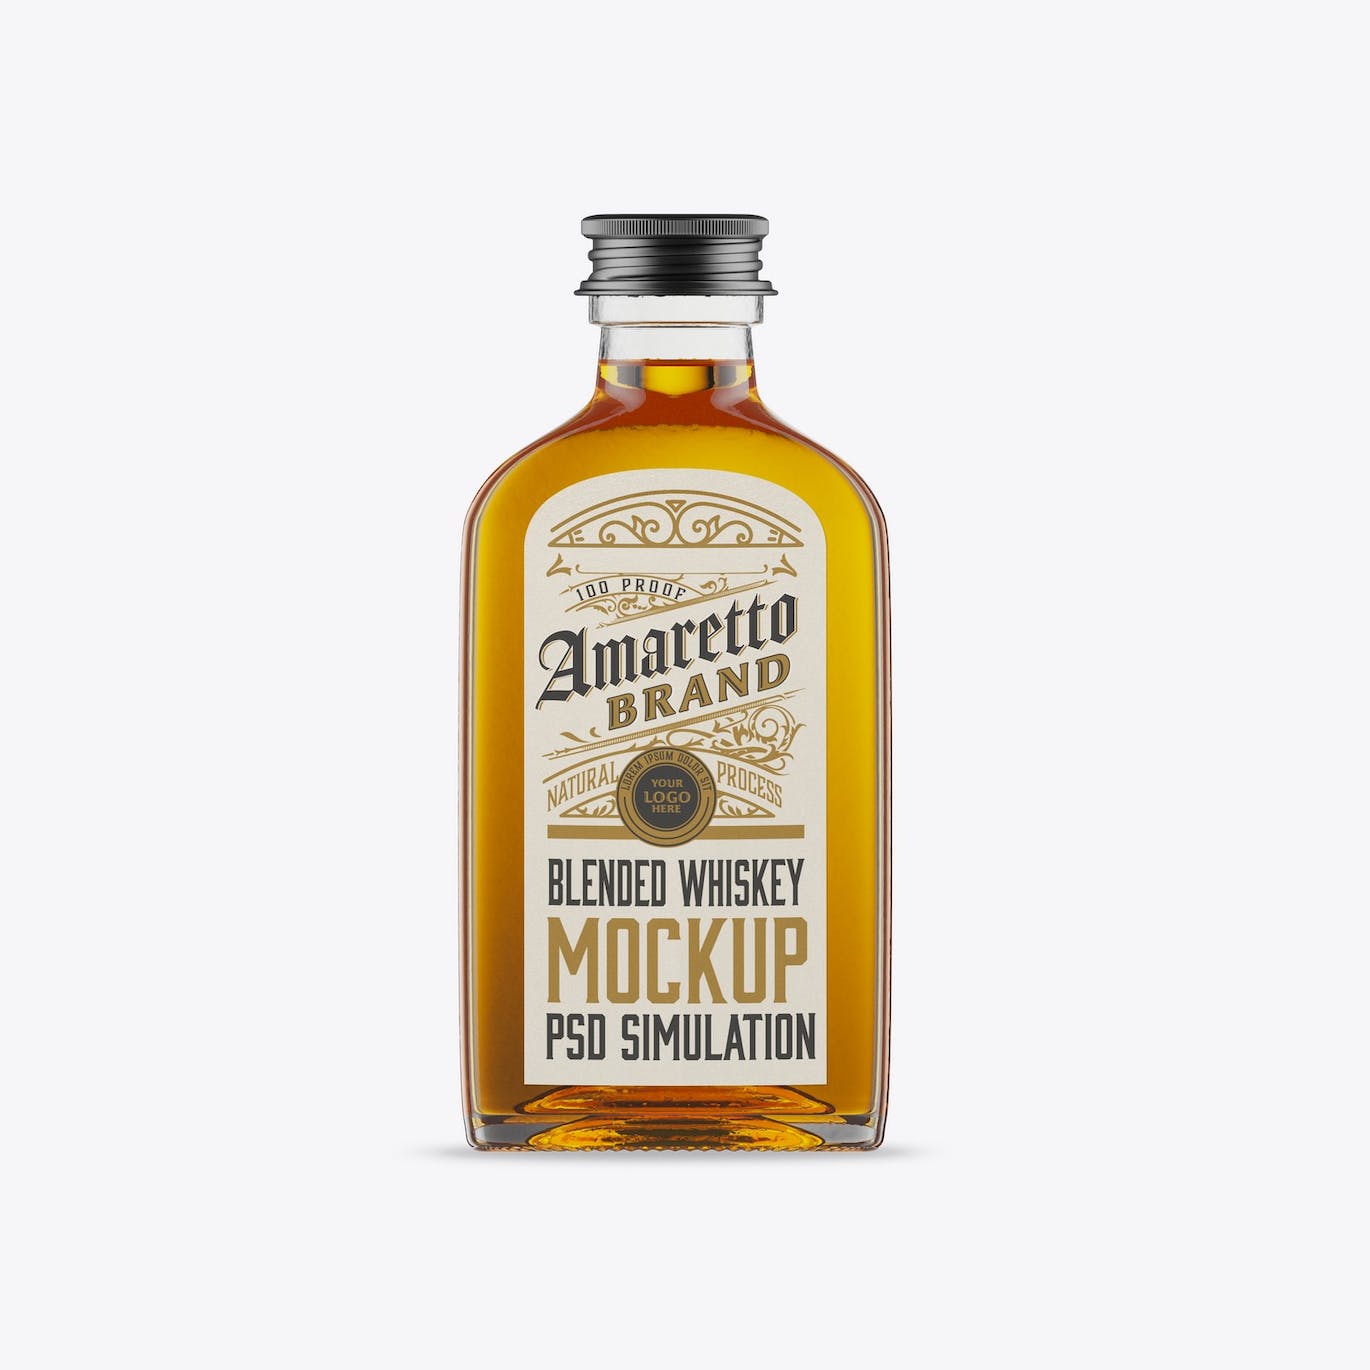 扁平威士忌玻璃瓶设计样机 Flat Whiskey Glass Bottle Mockup 样机素材 第6张